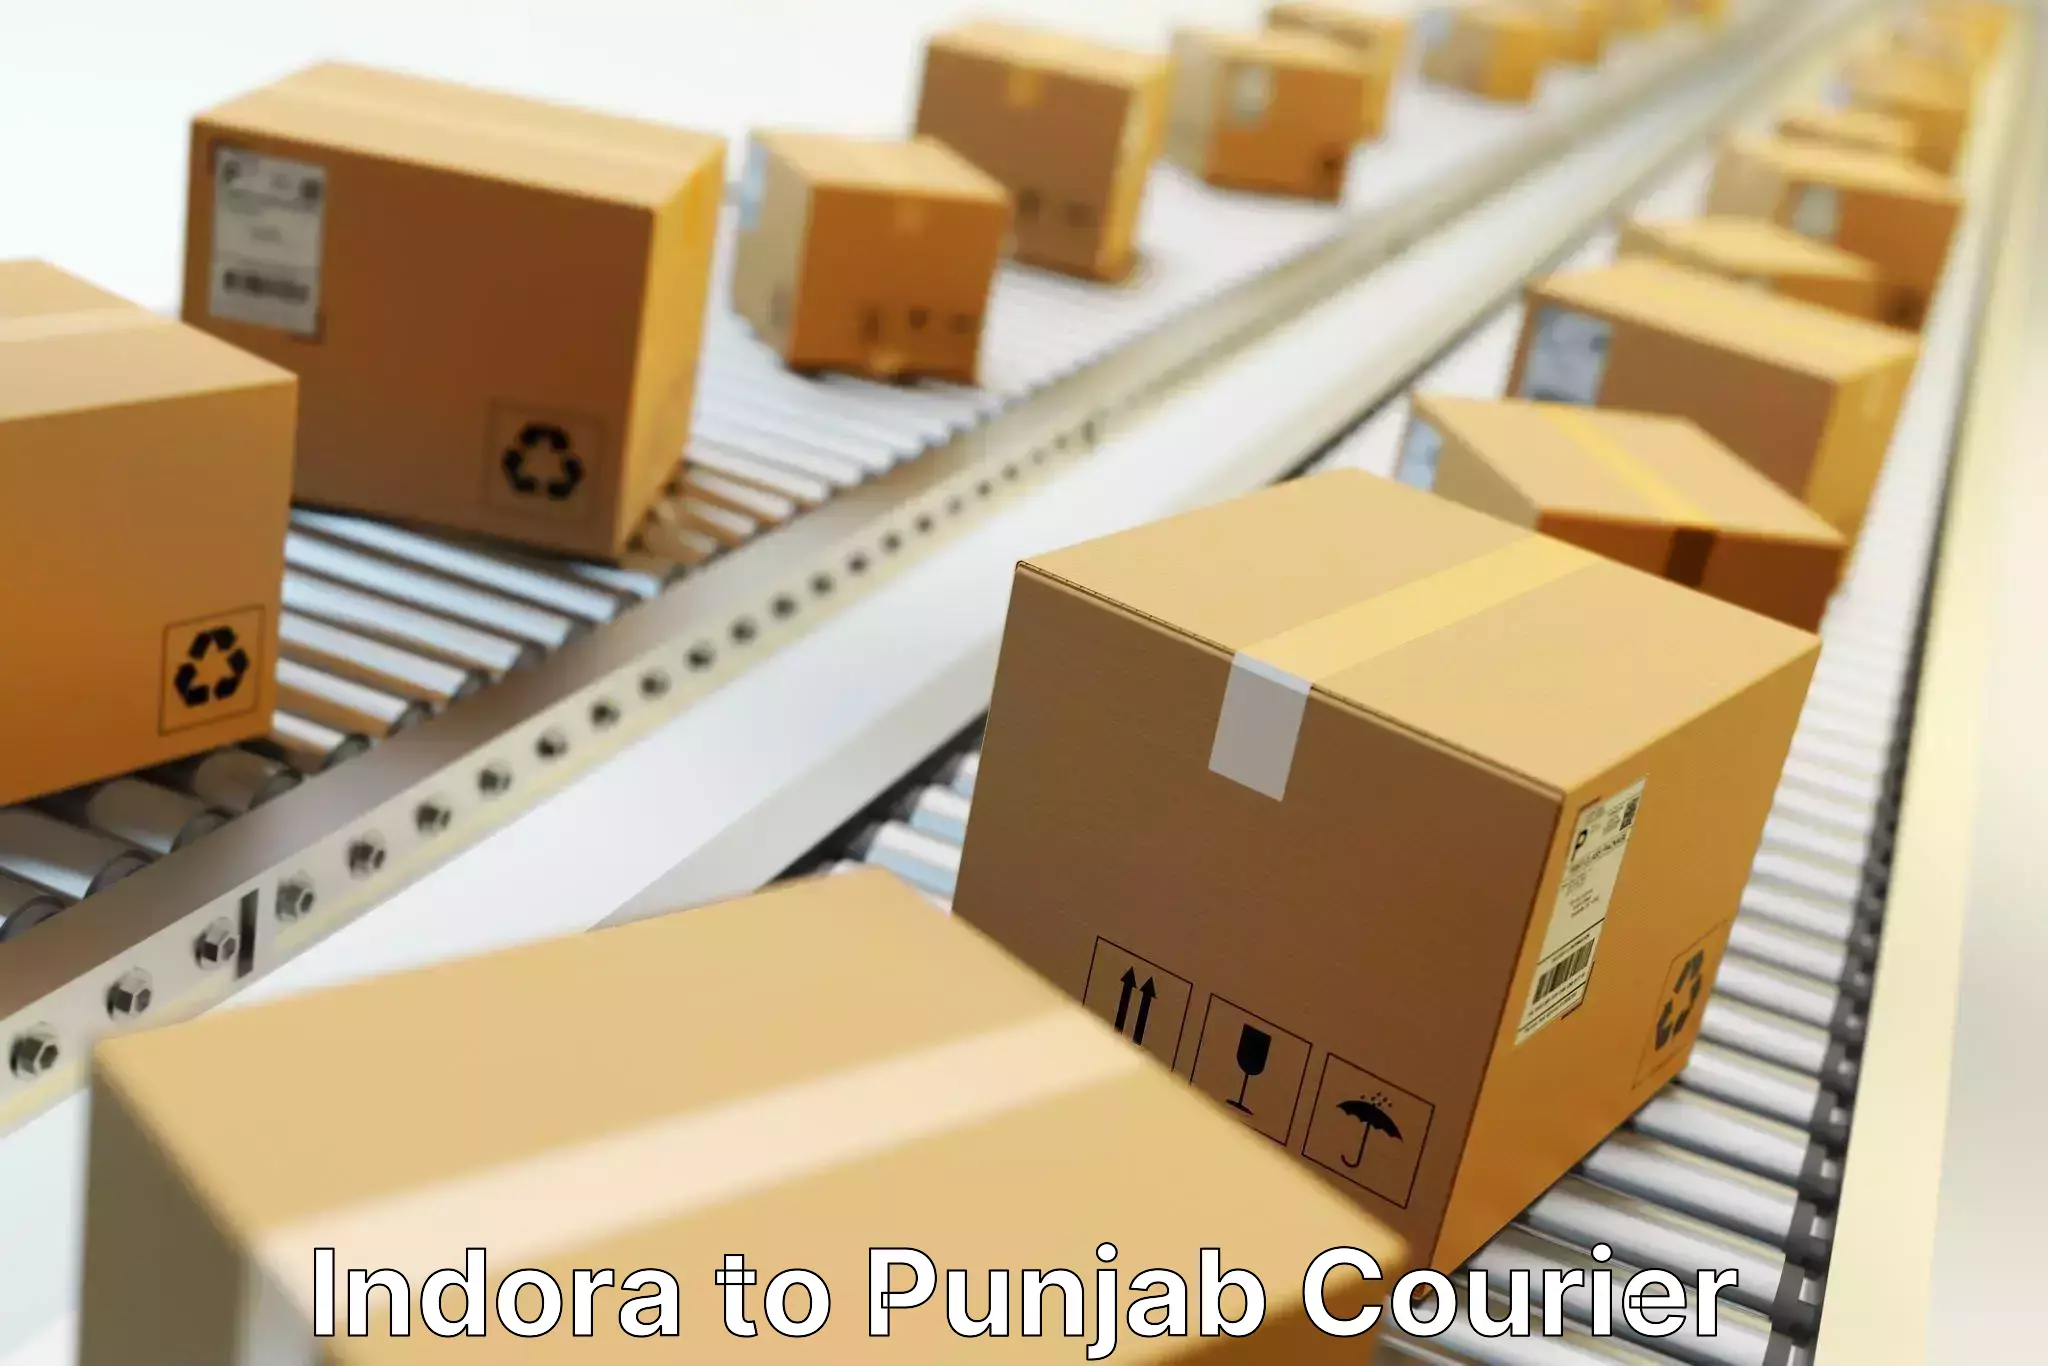 Modern delivery methods Indora to Punjab